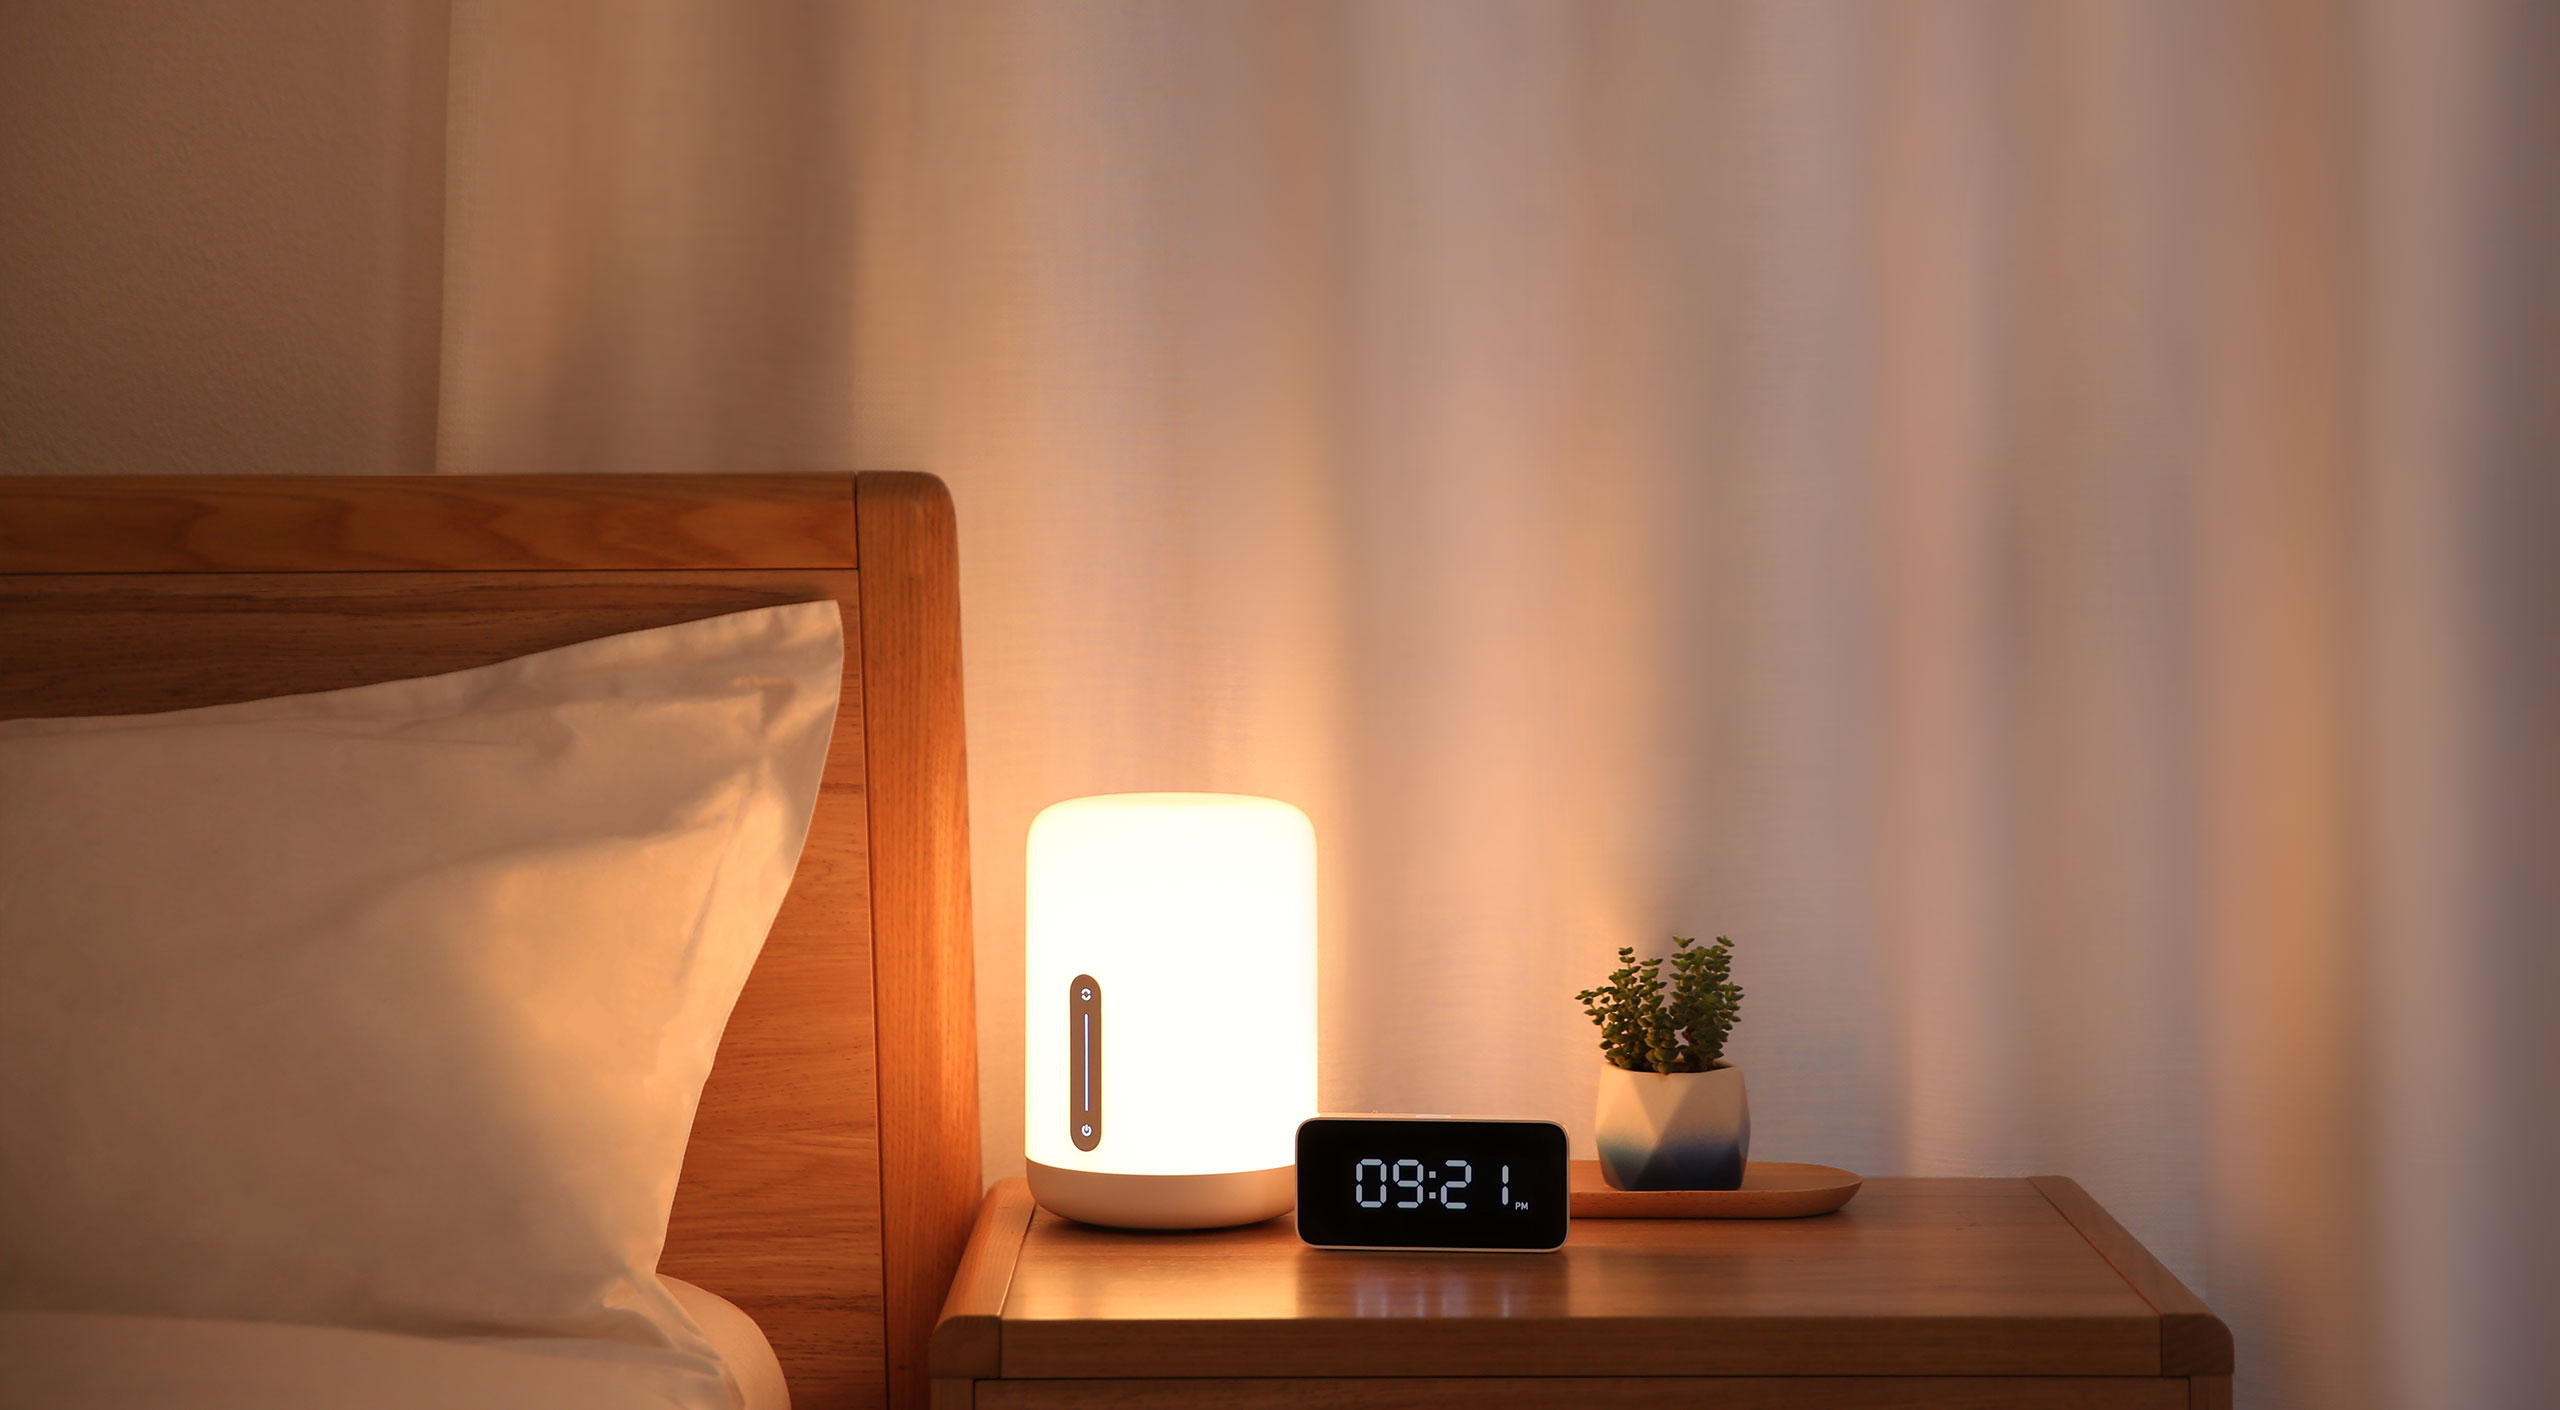 Xiaomi lägger tonvikt på hemmeautomation och sätter tris: detta är en ny dammsugare, luftrenare och nya lampor 4 